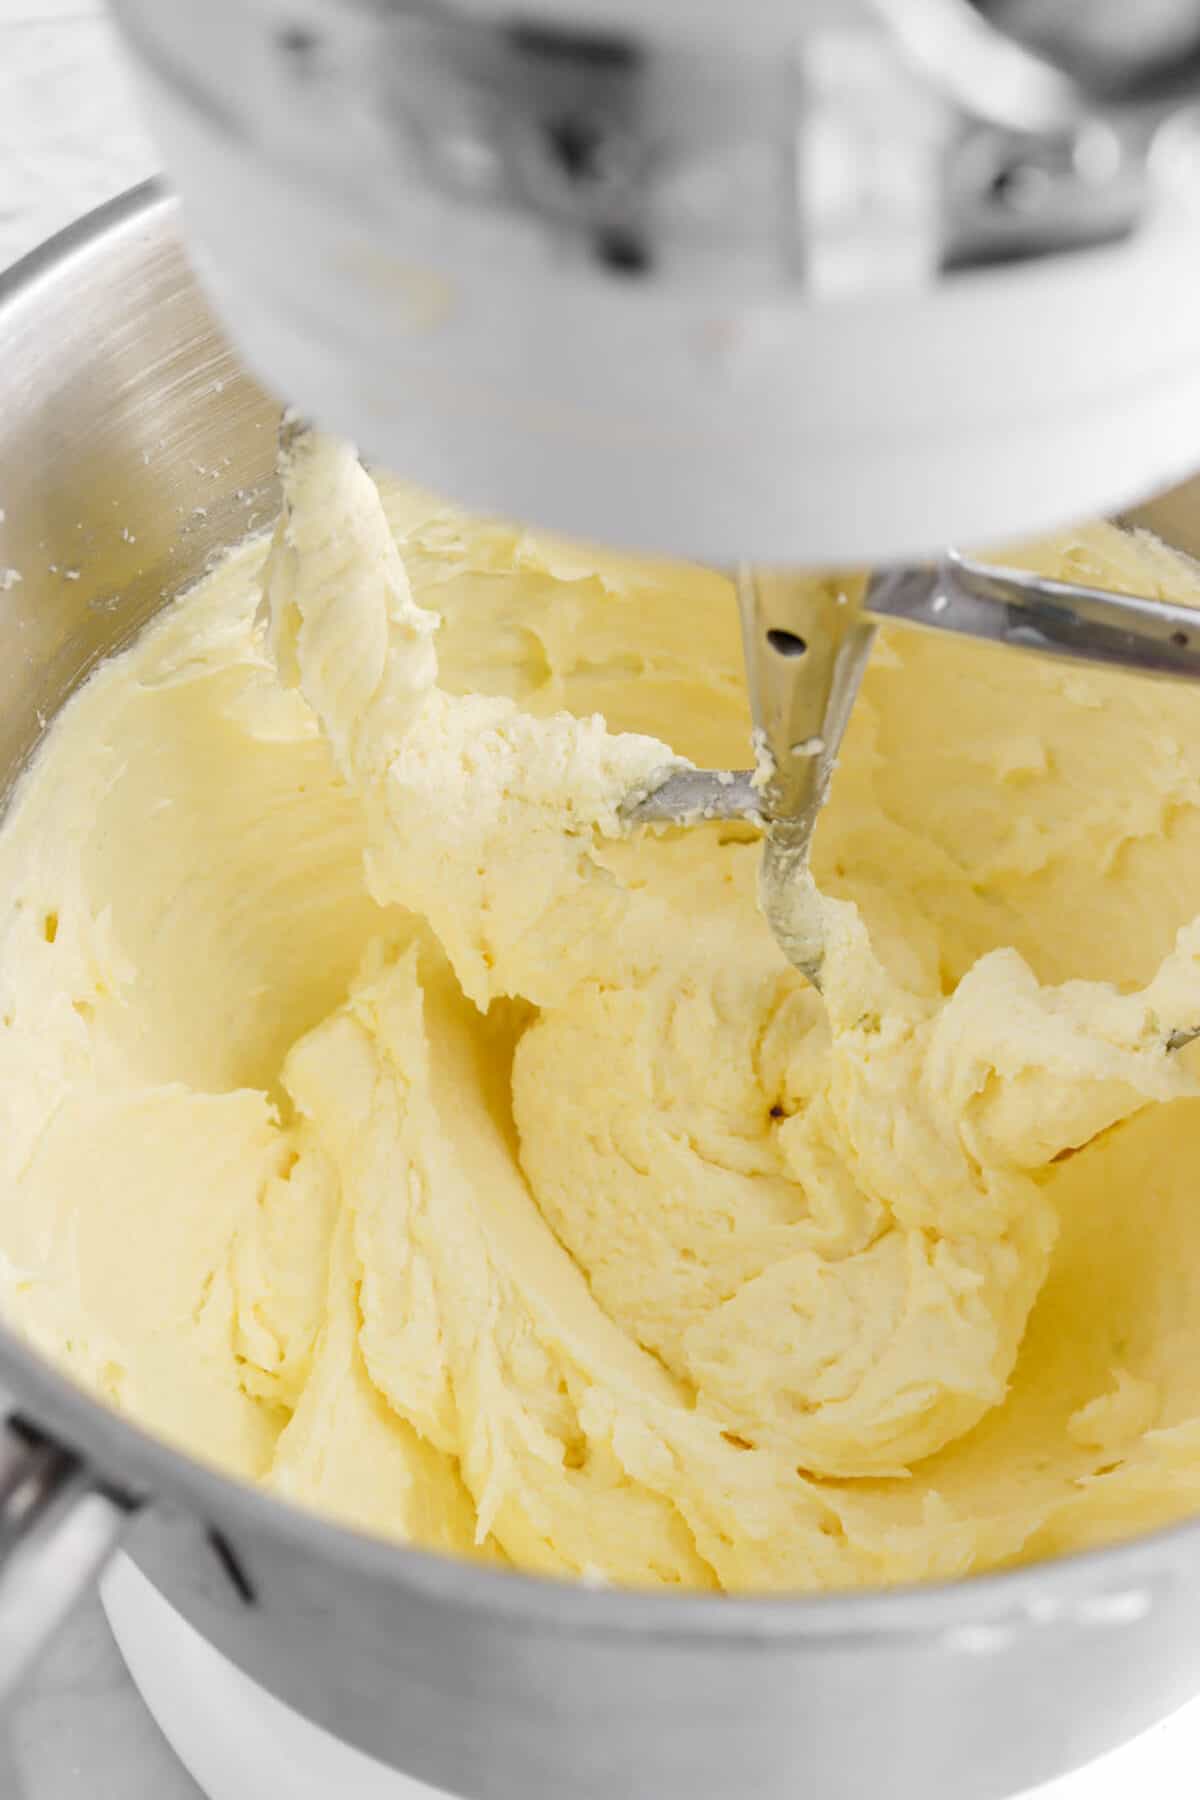 egg beaten into butter mixture